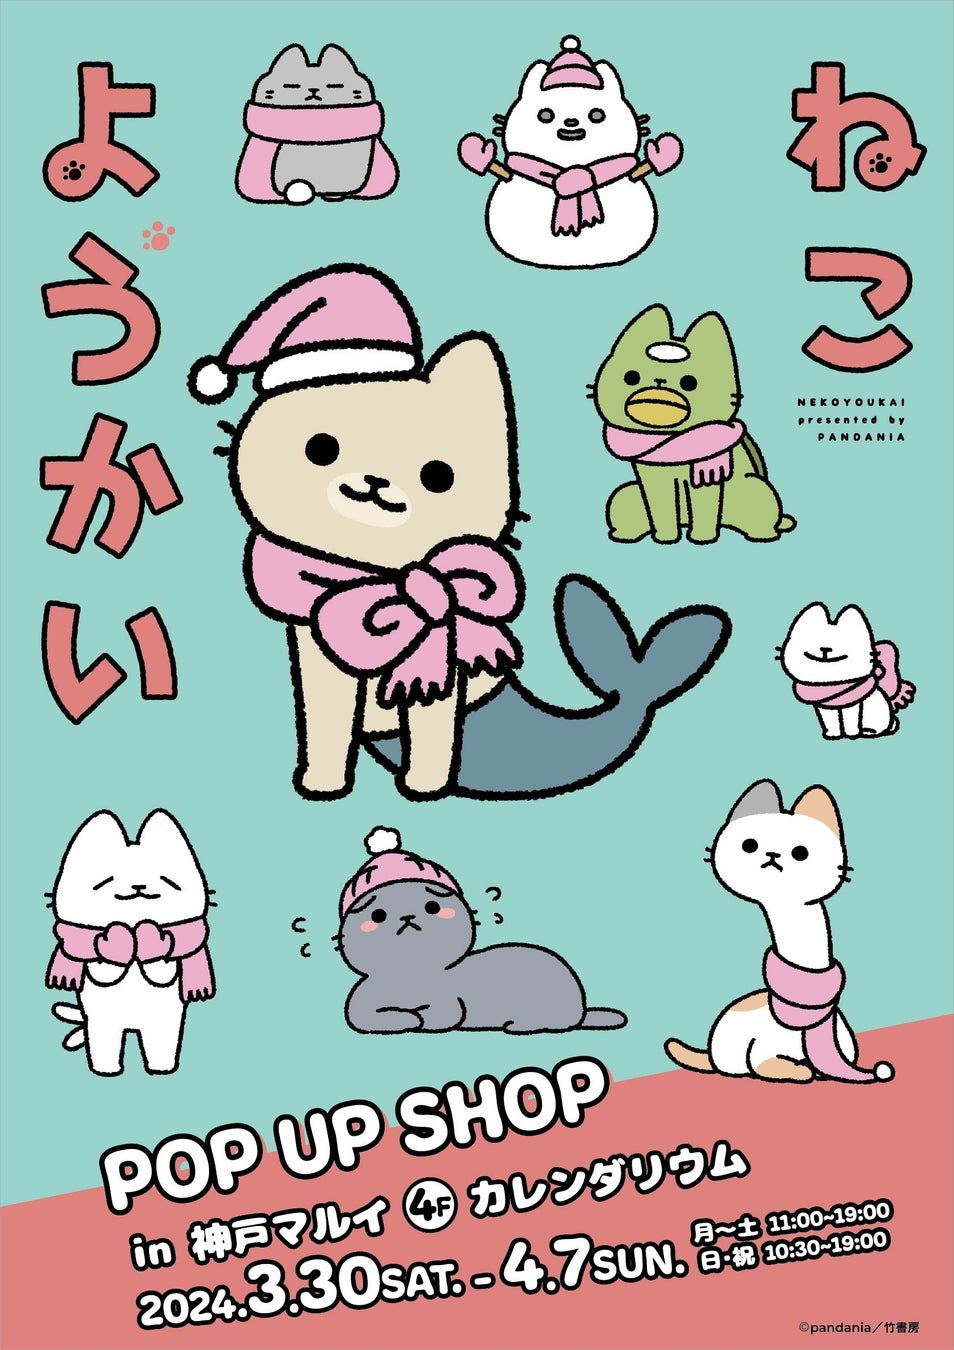 ほのぼの系ねこマンガ「ねこようかい」POP UP SHOPが兵庫県・神戸マルイにて3月30日(土)から開催決定！